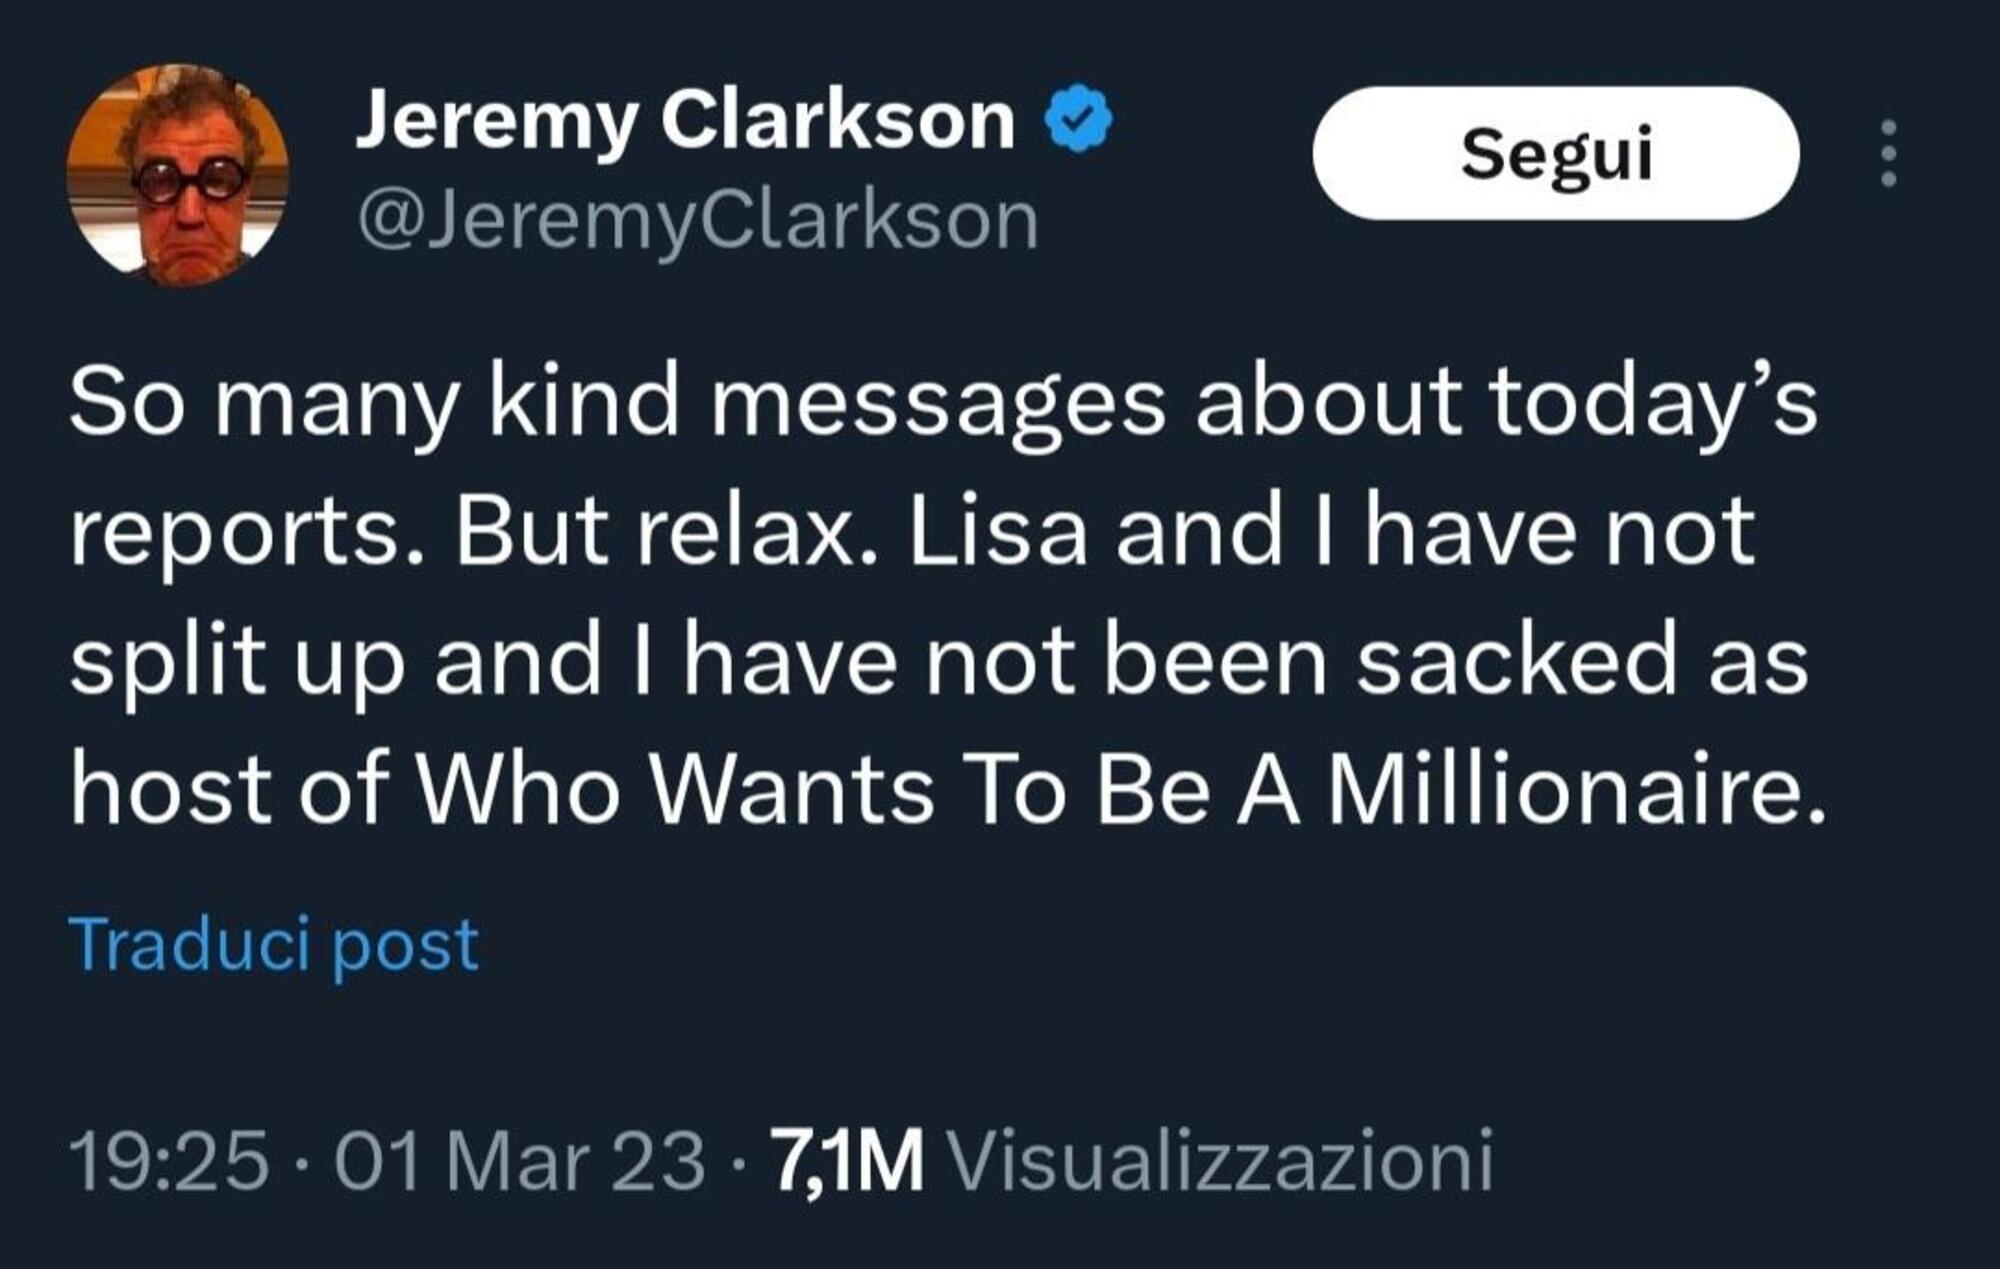 Jeremy Clarkson tweet